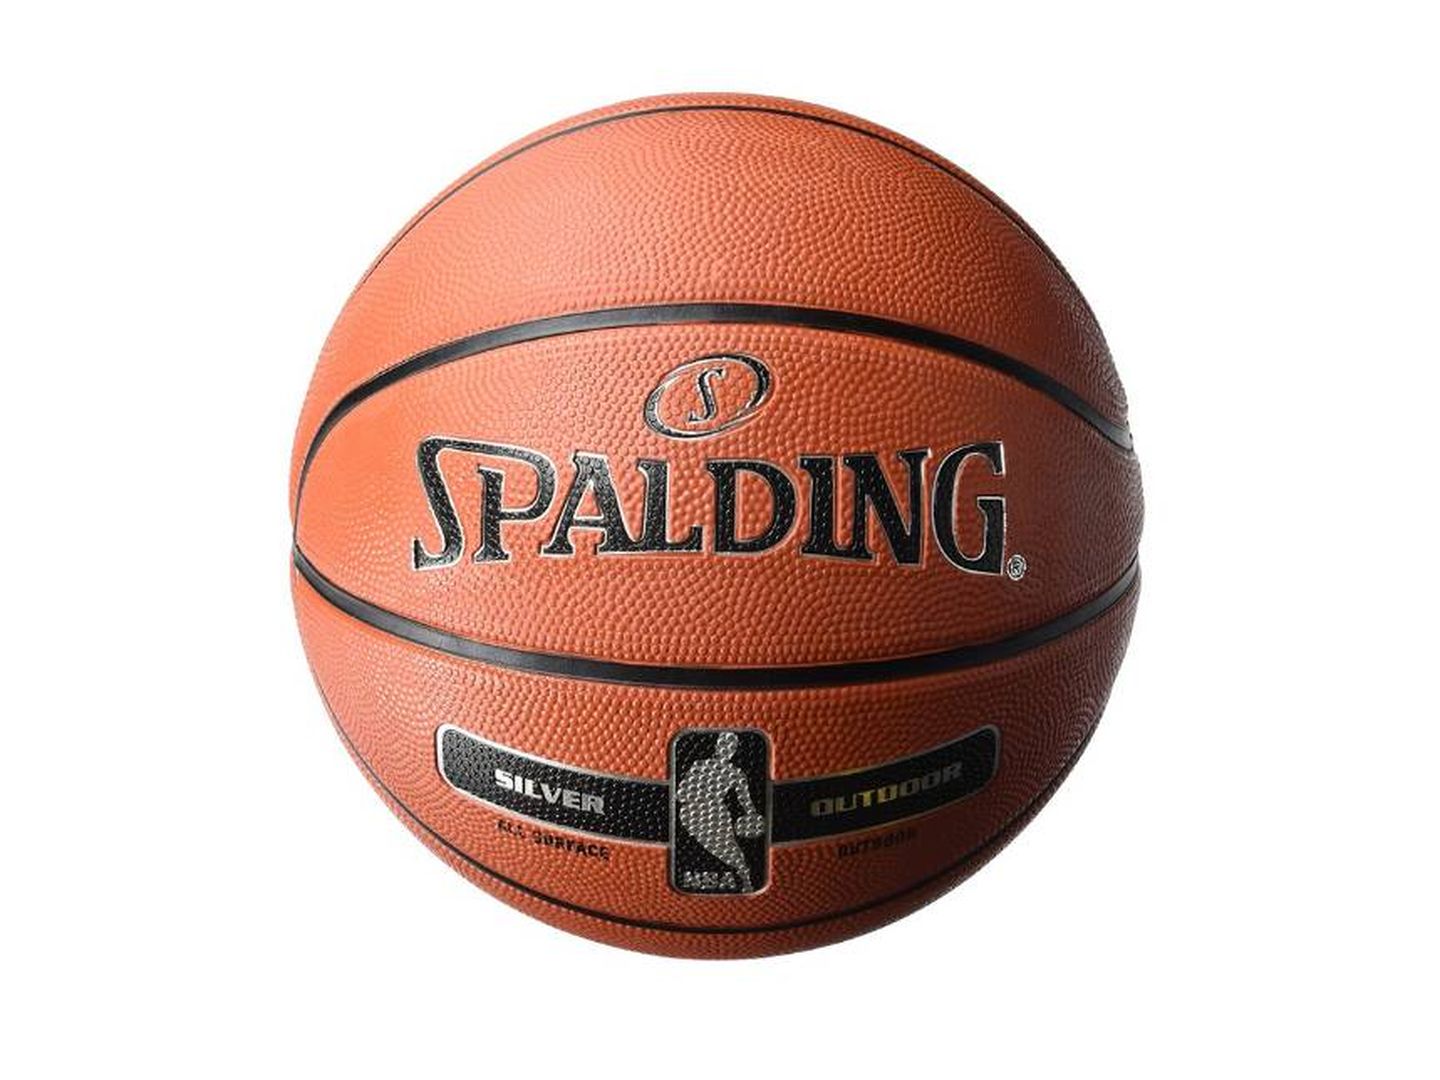 Cómo saber qué talla de balón de baloncesto usar?